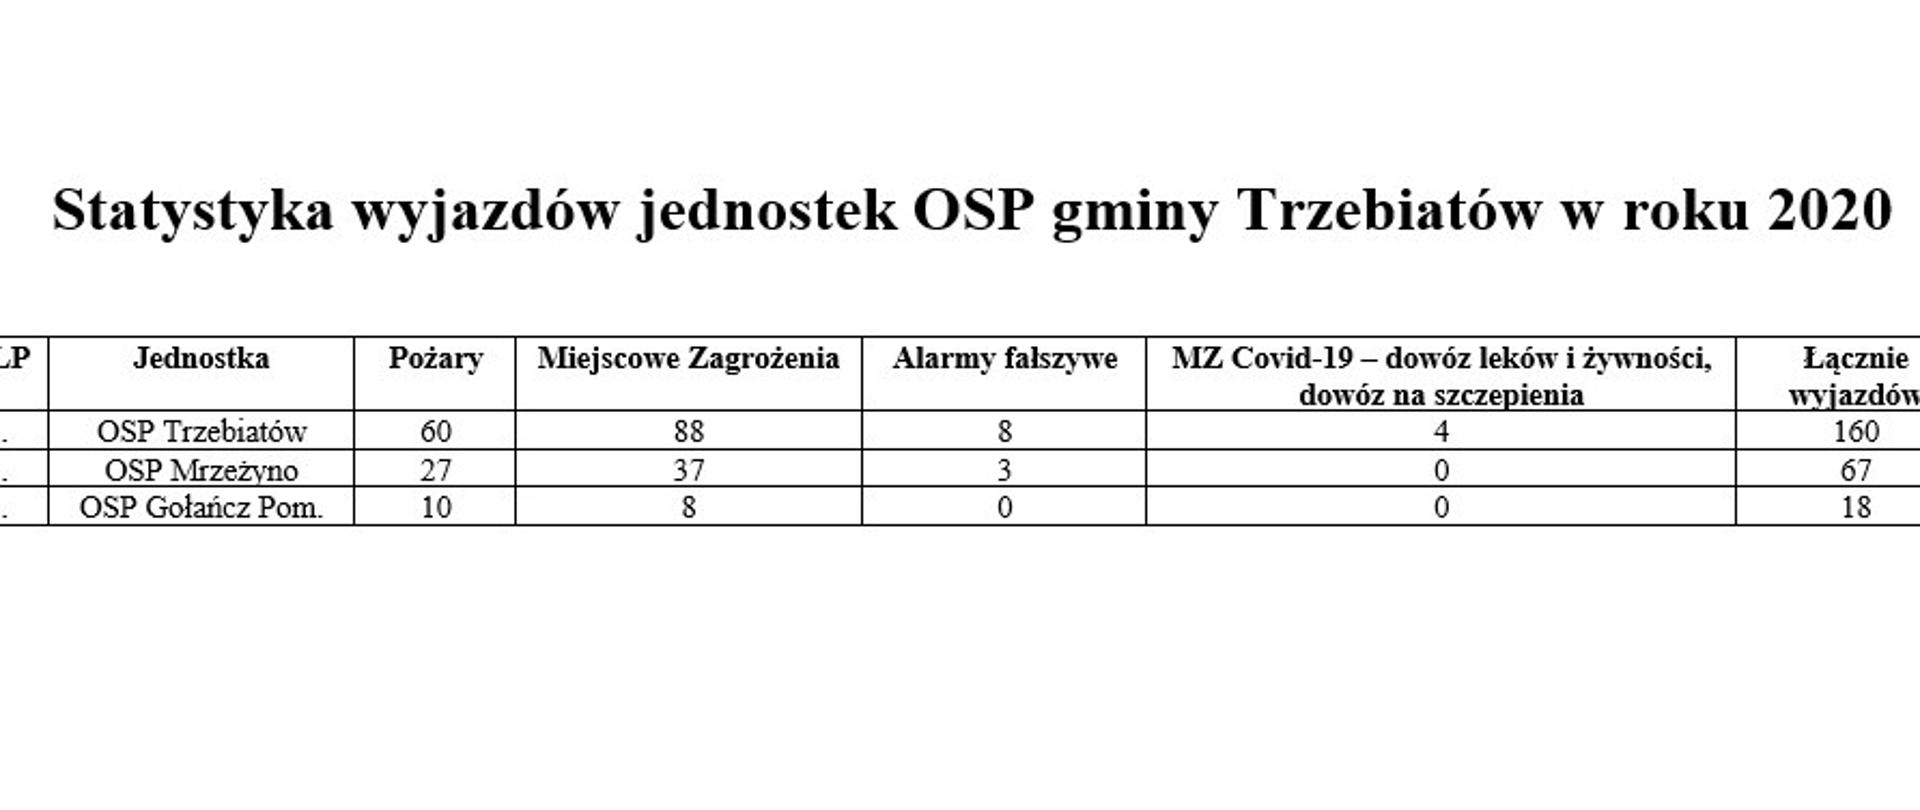 widoczna tabelka z wyjazdami OSP gminy Trzebiatów